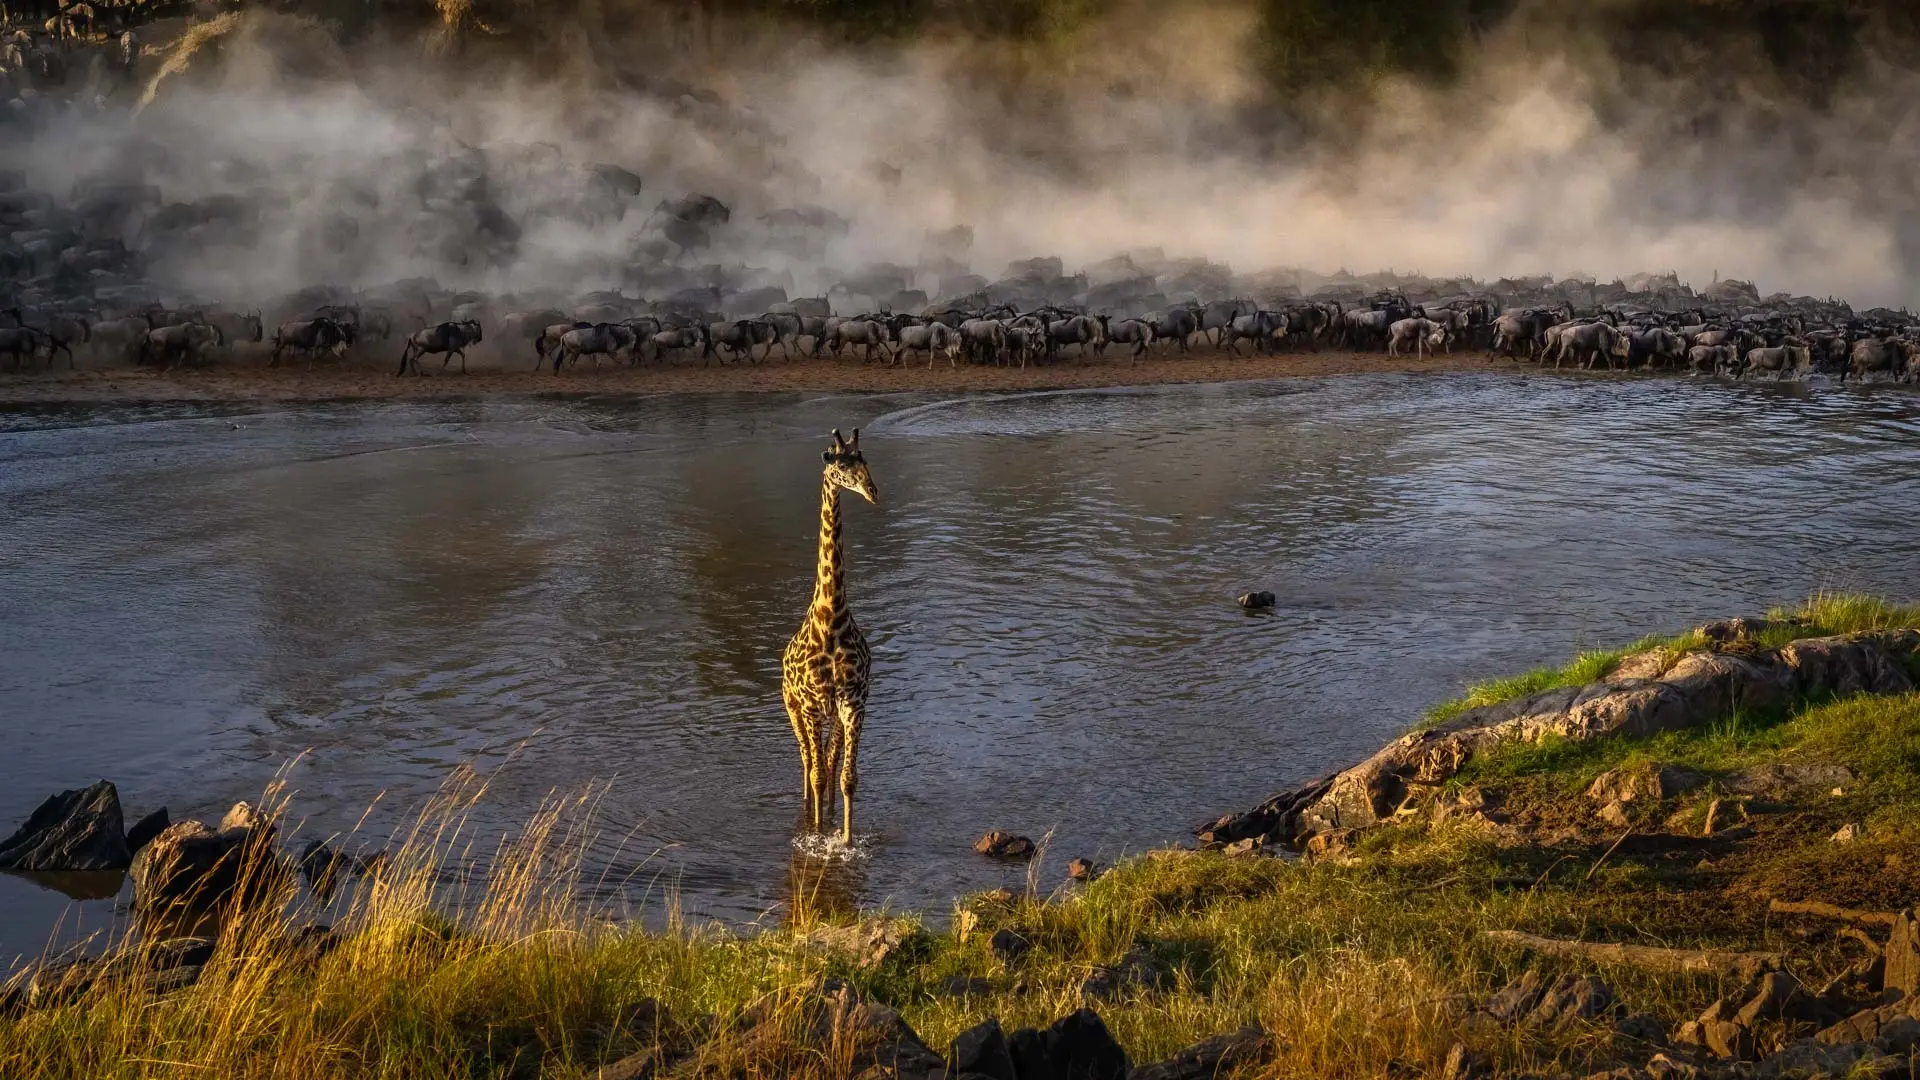 Serengeti Migration safari - Mara river crossing